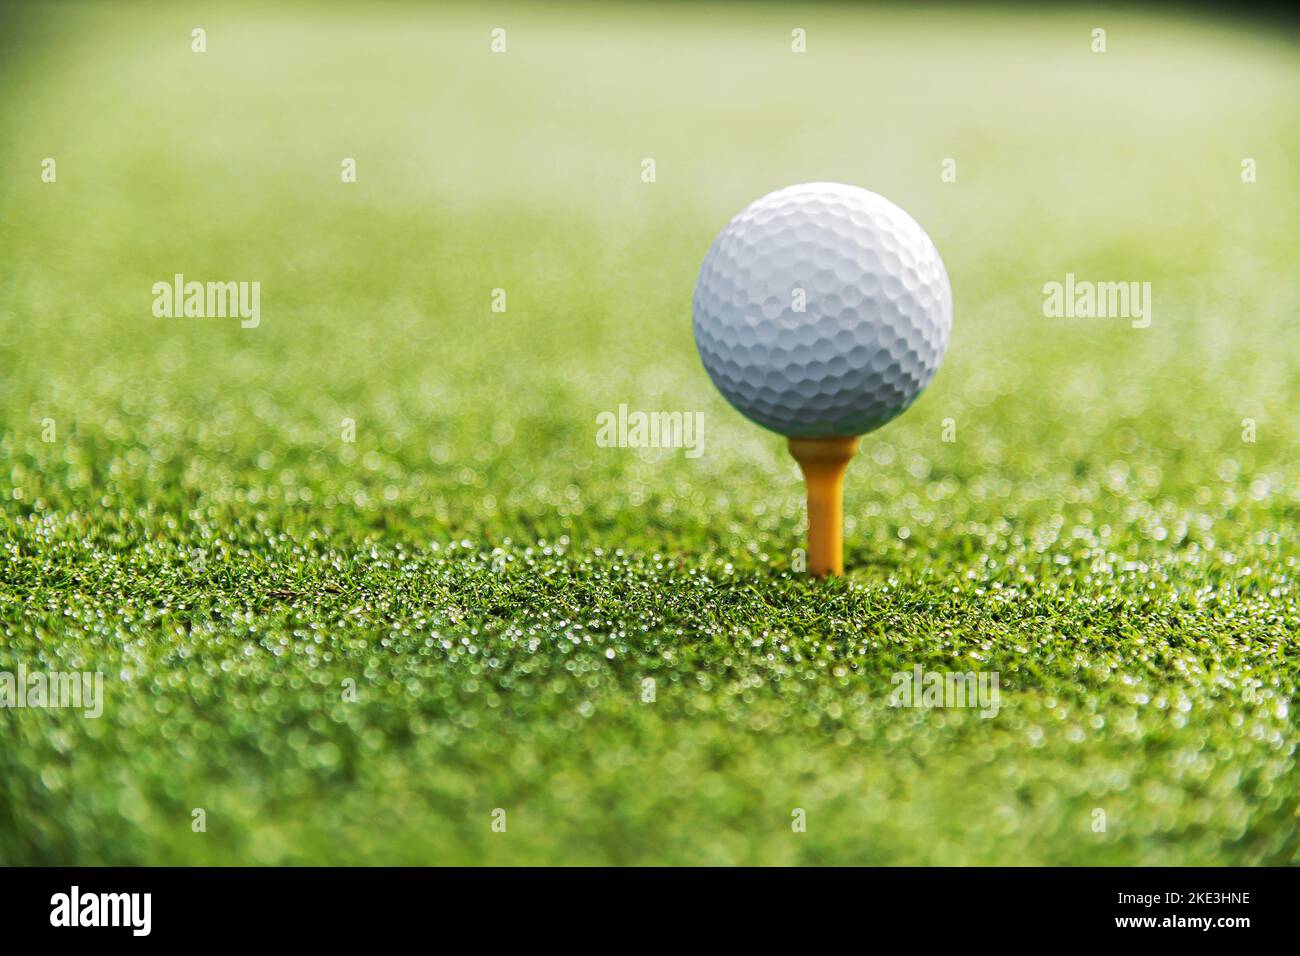 Mise au point douce de la petite balle de golf blanche sur le tee-shirt prêt à frapper dans le jeu sur le green course Banque D'Images